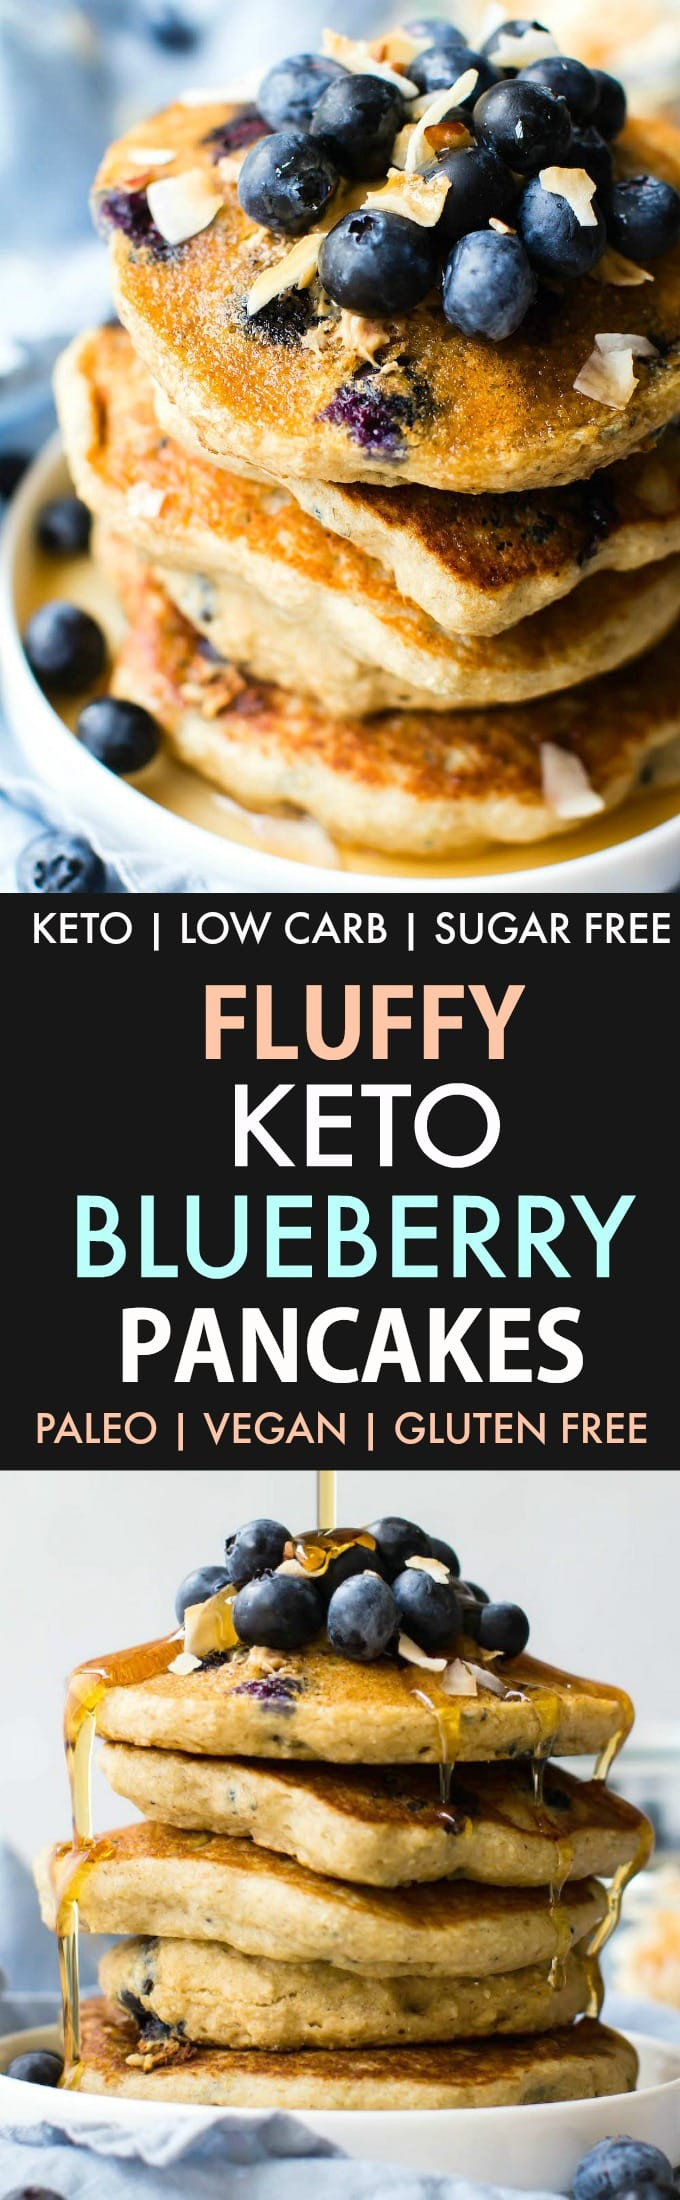 15 Incredible Vegan Keto Pancakes - Best Product Reviews